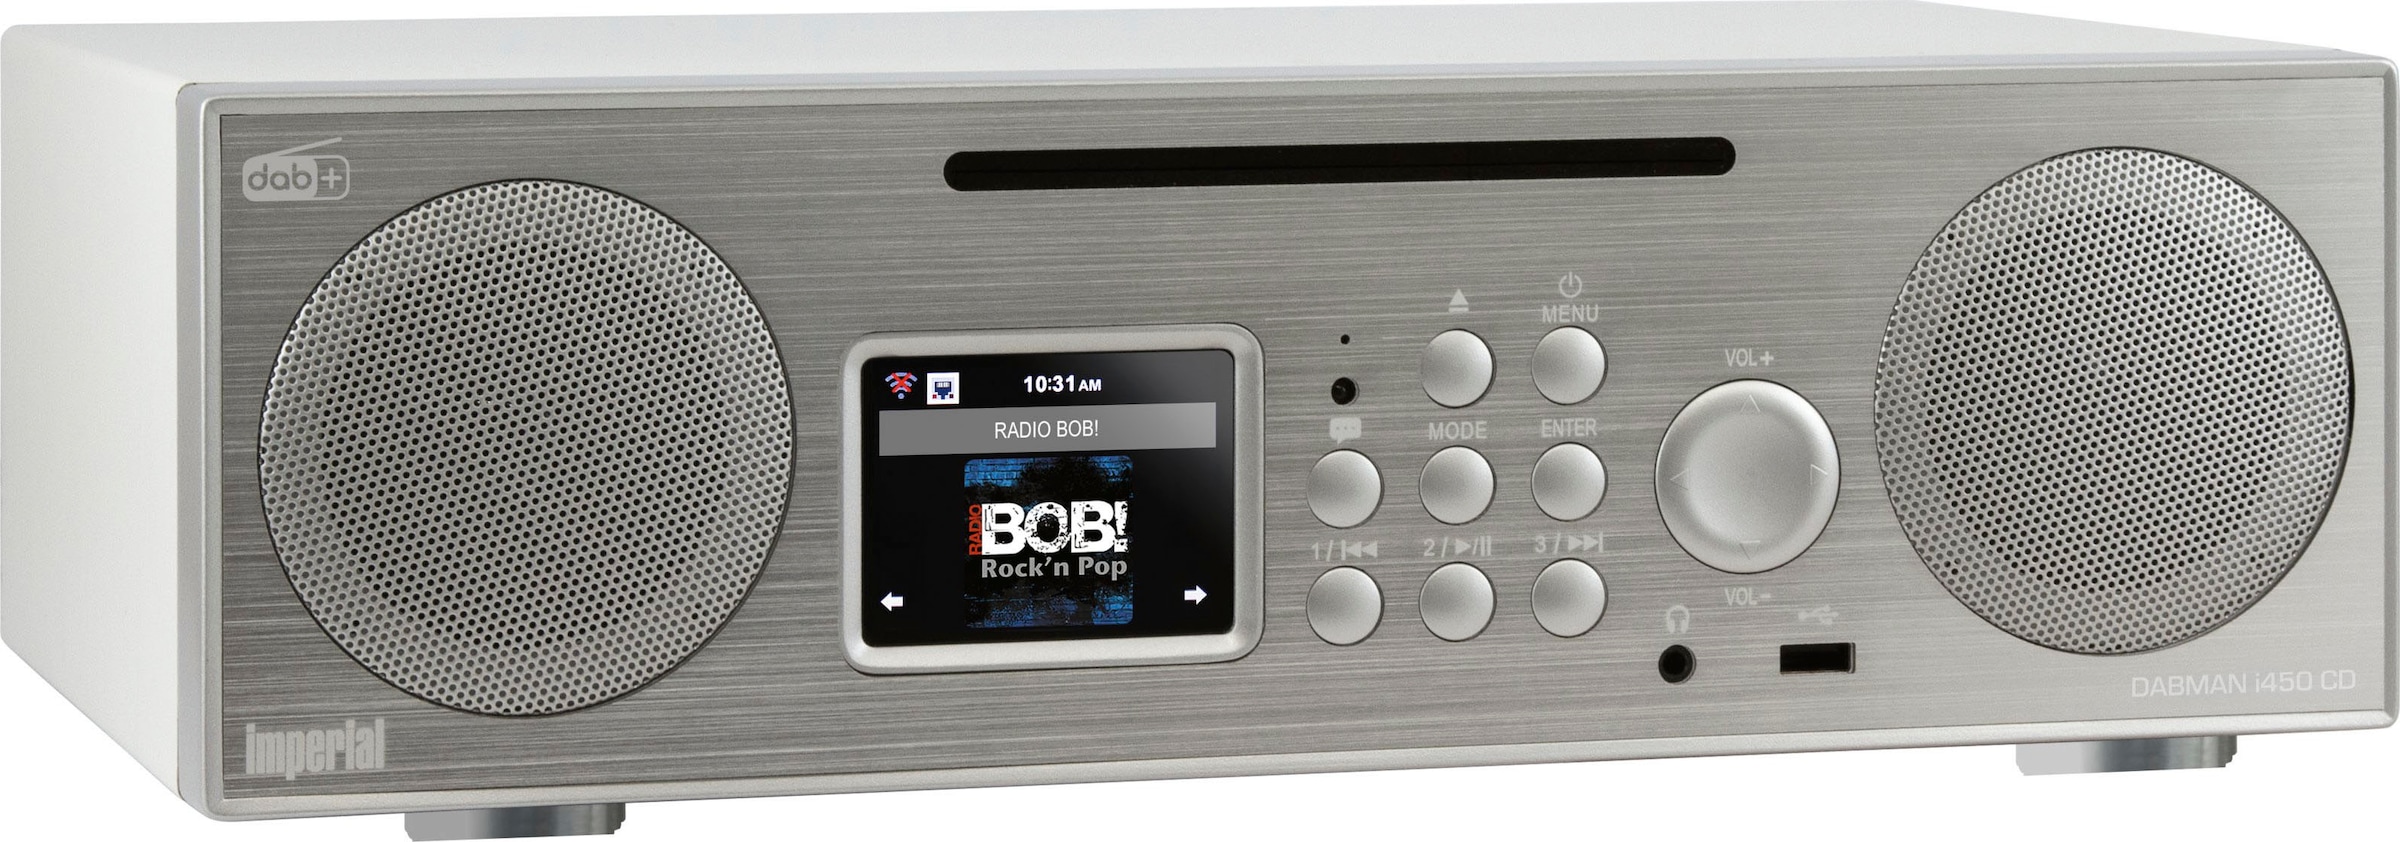 RDS-Digitalradio 30 (Bluetooth-LAN IMPERIAL (DAB+)-Internetradio-FM-Tuner BAUR | CD«, (Ethernet)-WLAN (DAB+) W) Digitalradio by TELESTAR mit UKW i450 »DABMAN